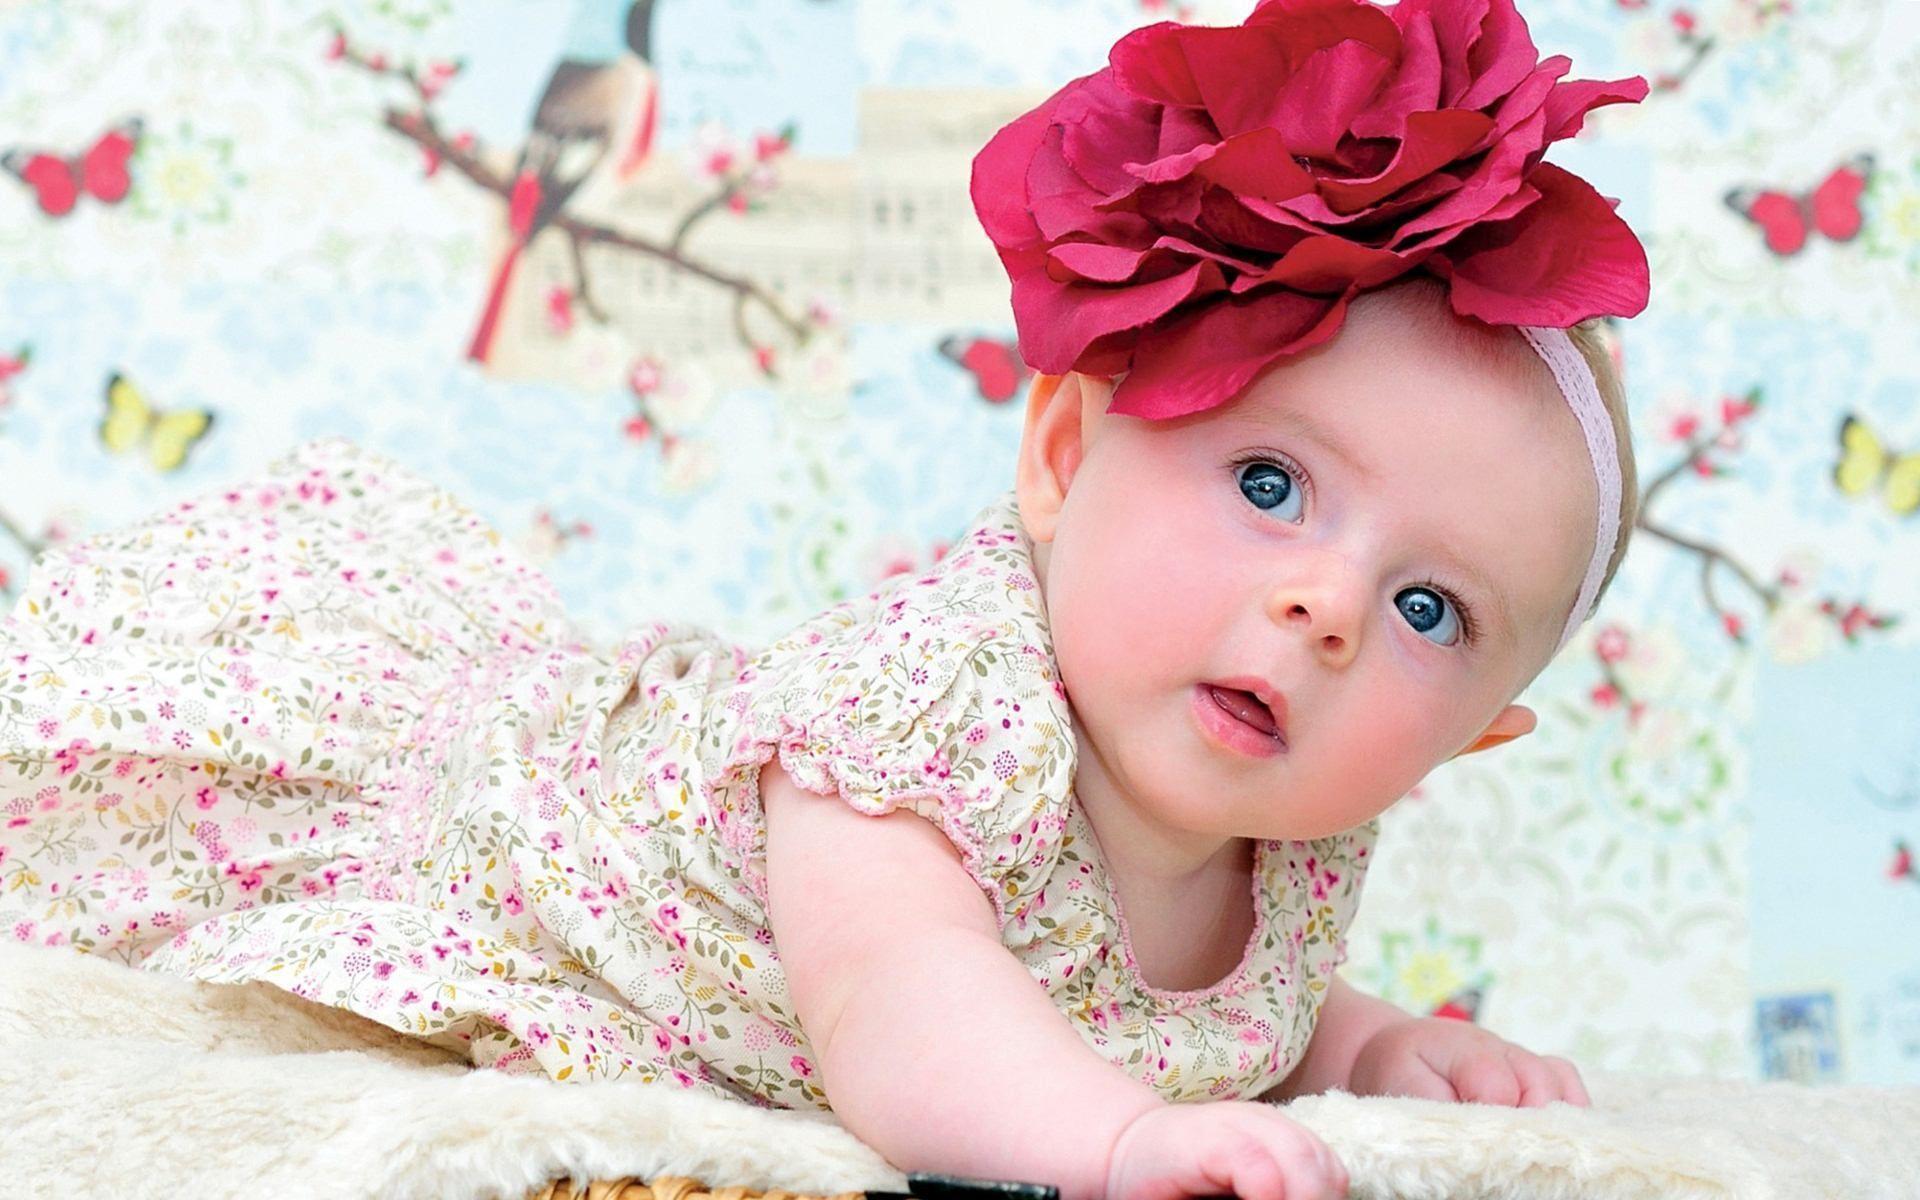 YWE 87: Baby Girl Wallpaper For Desktop